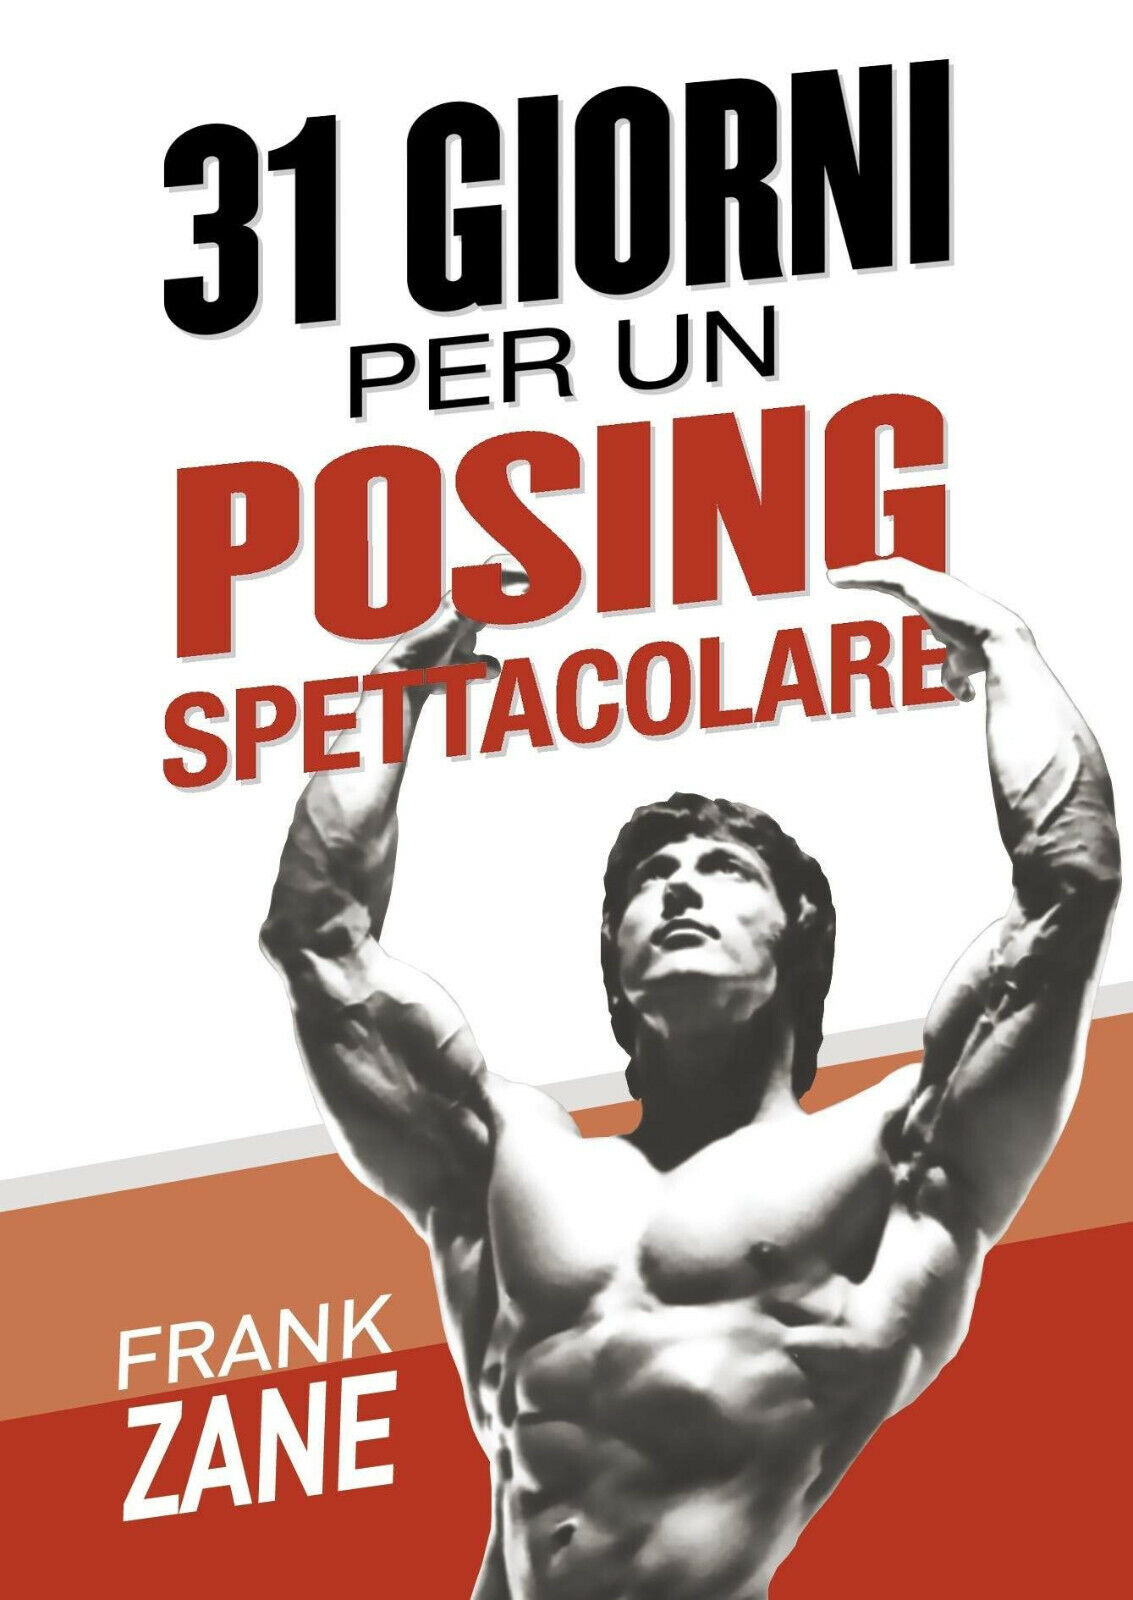  31 giorni per un posing spettacolare - Frank Zane - Olympian?s, 2020